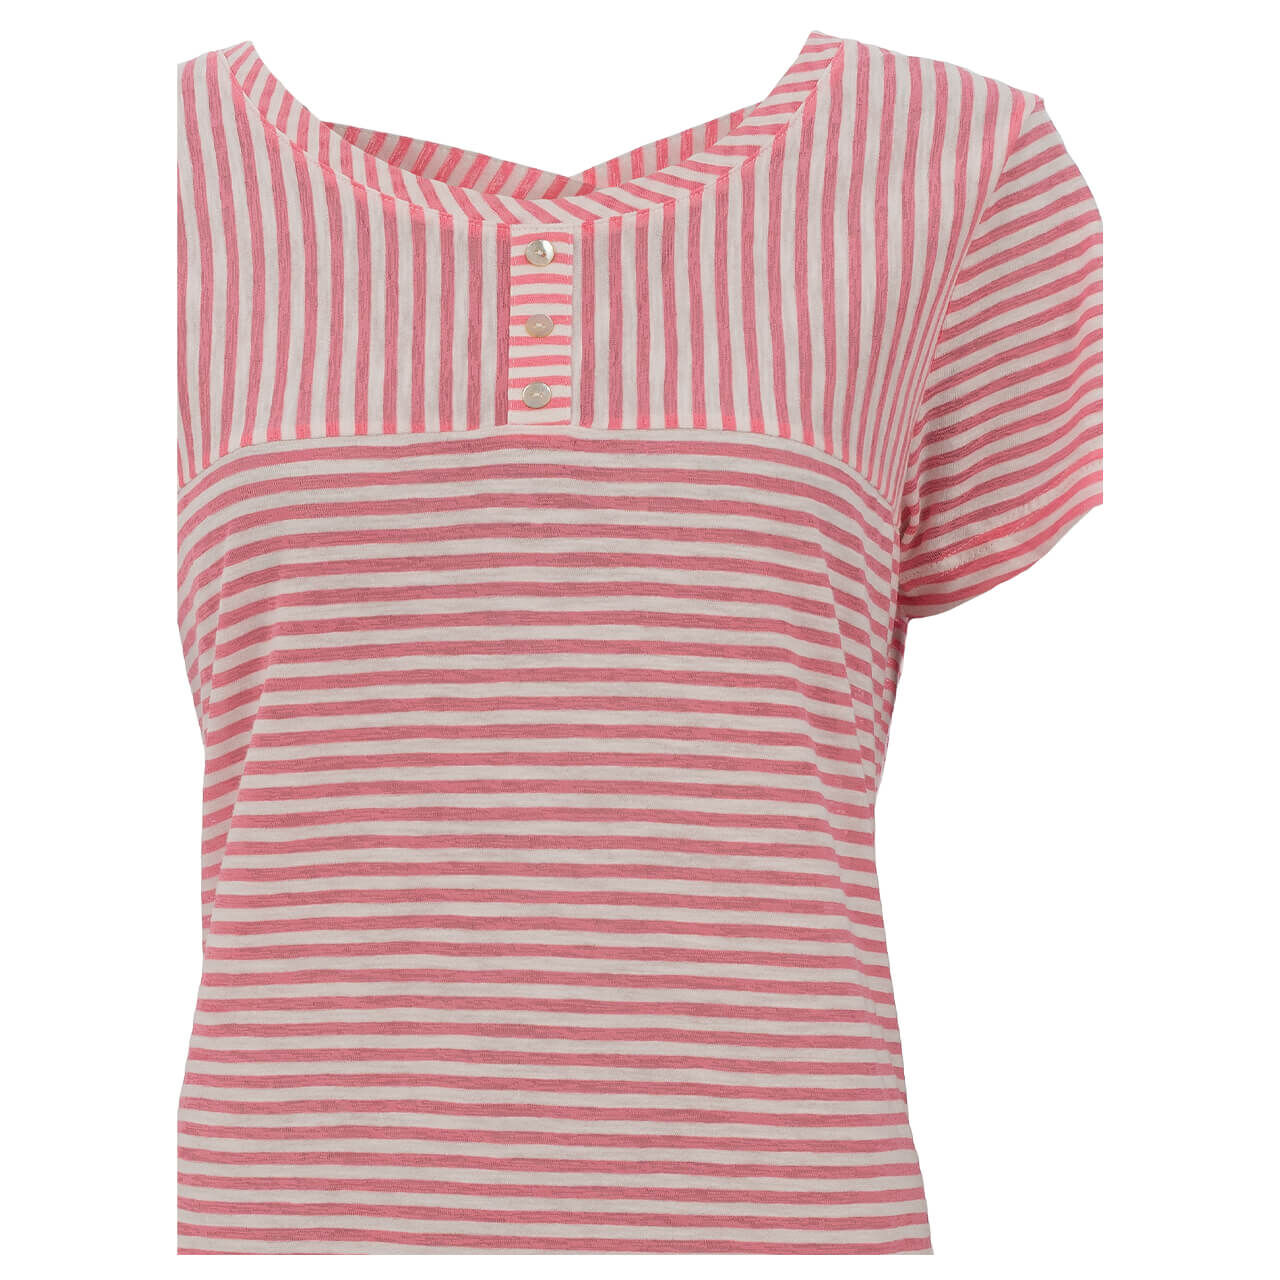 Soquesto T-Shirt für Damen in Rosa gestreift, FarbNr.: 1301